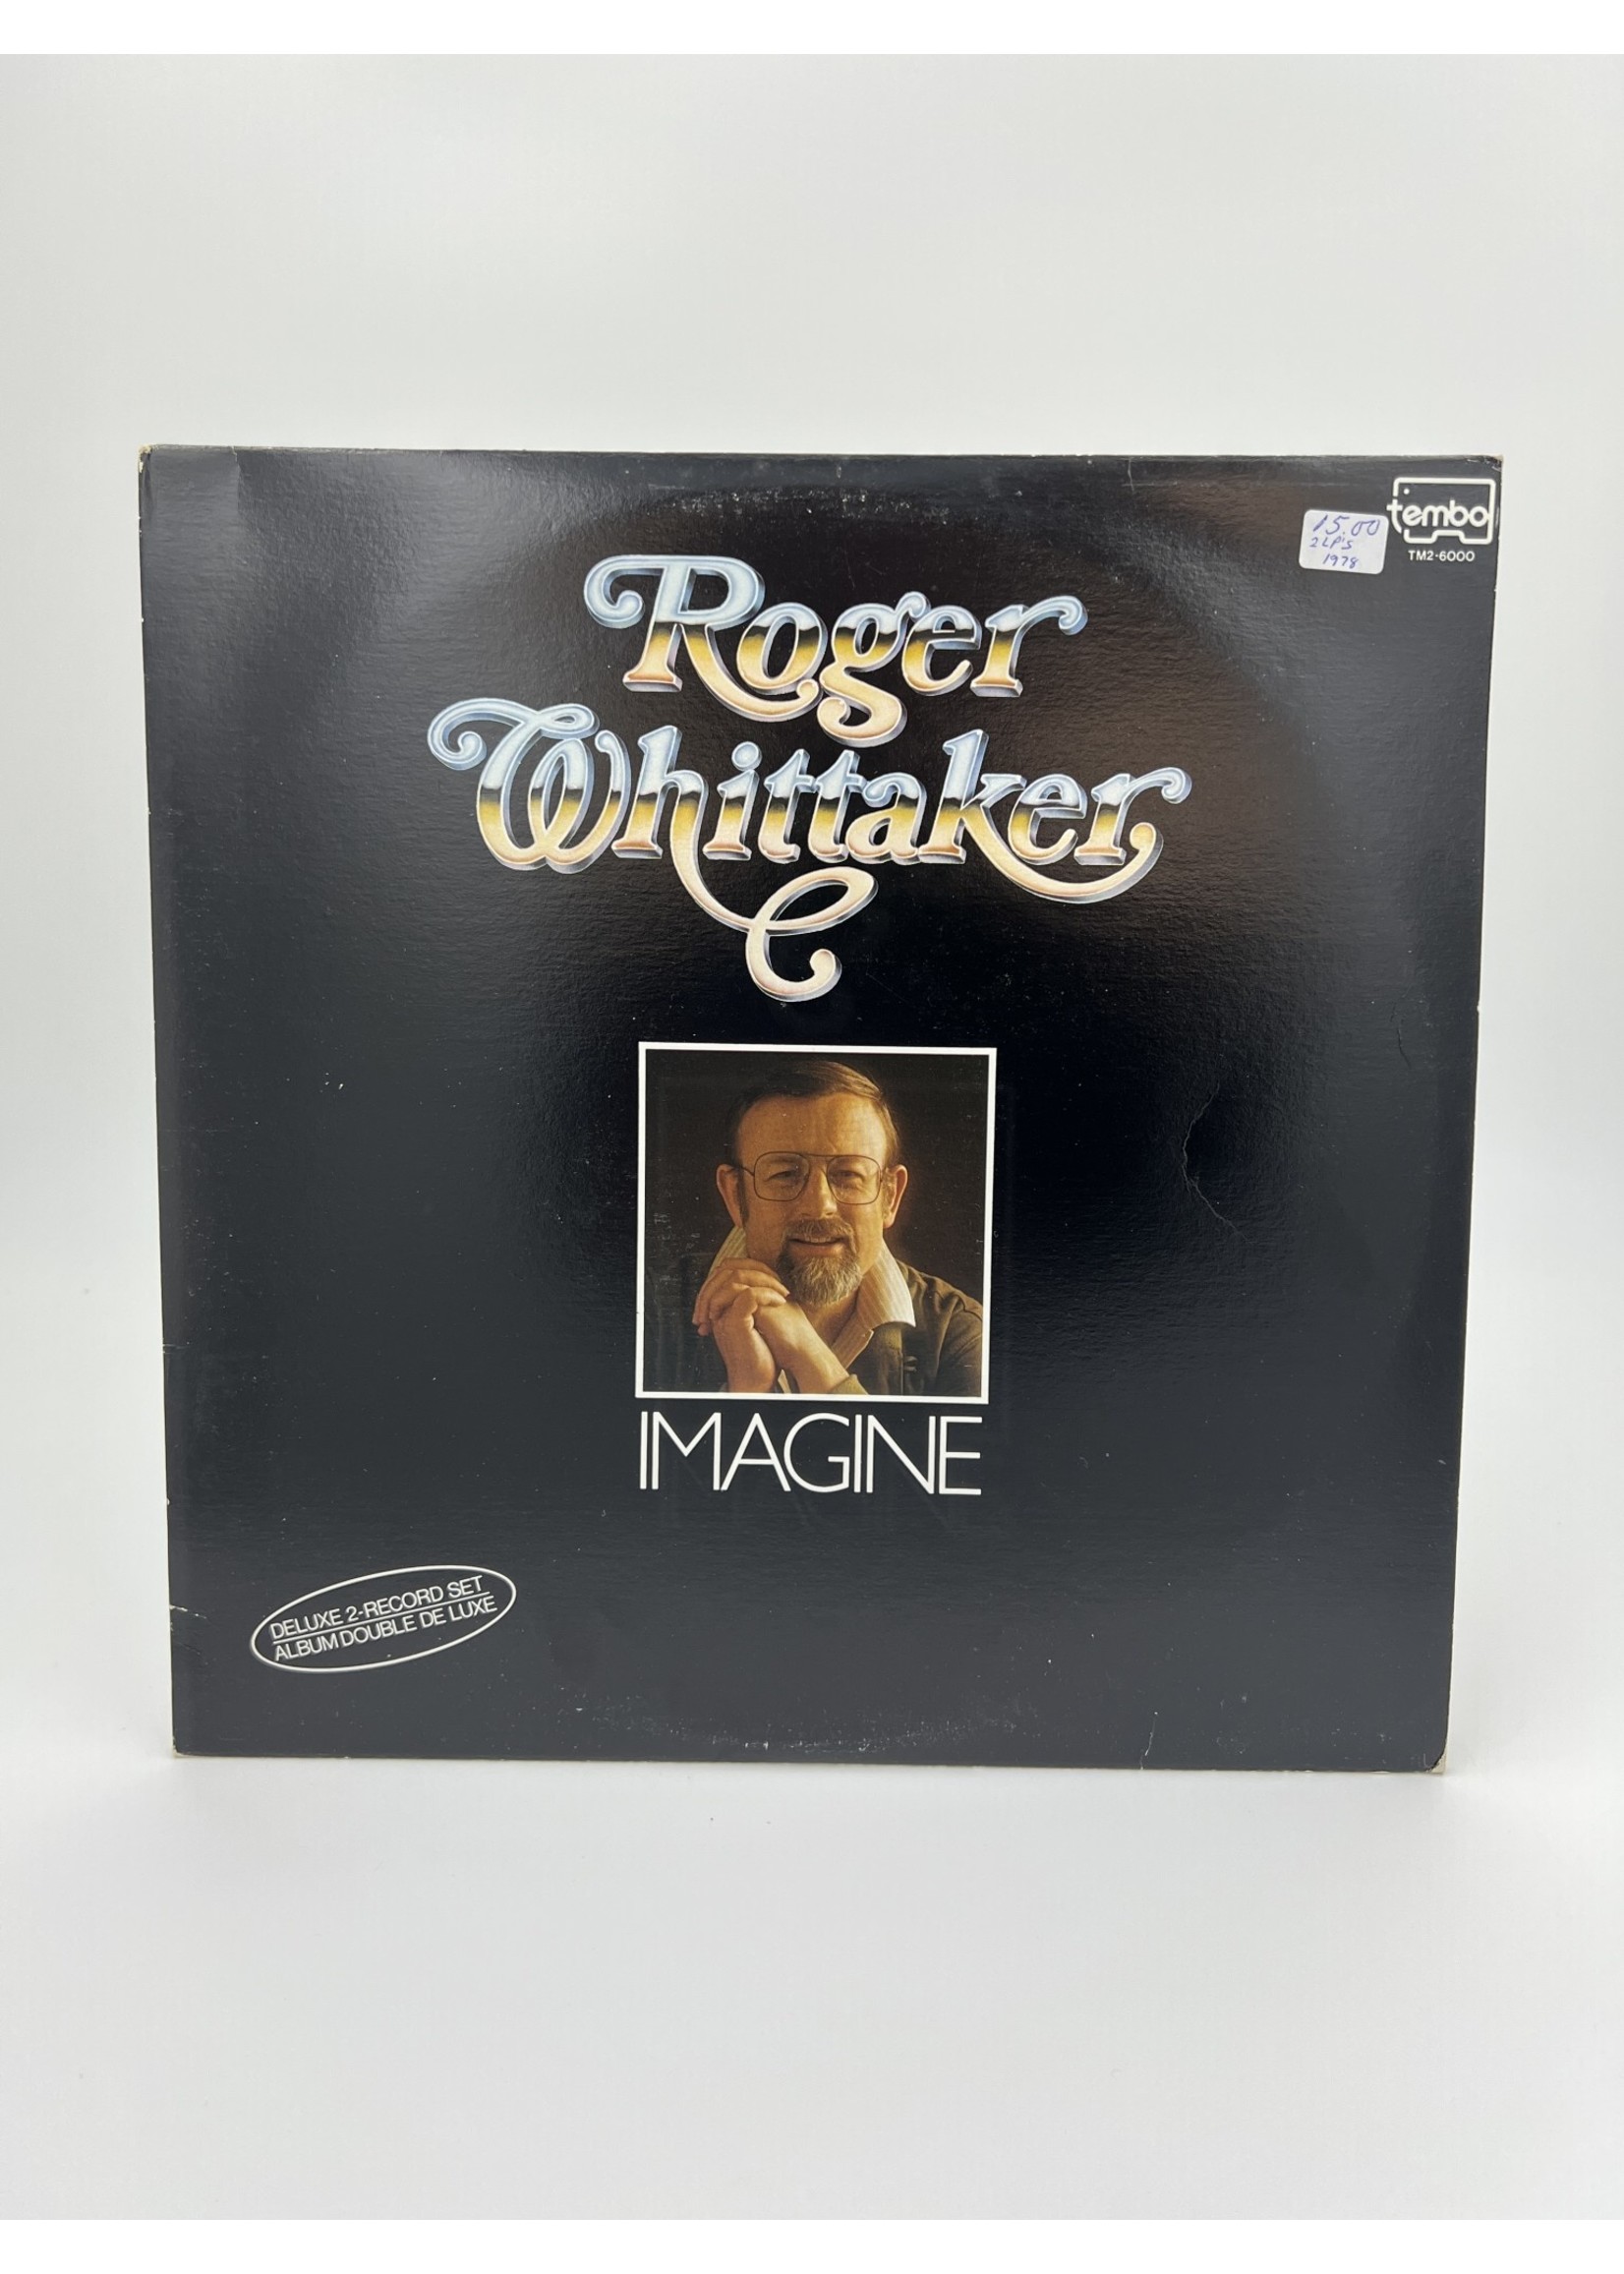 LP Roger Whittaker Imagine LP 2 RECORD